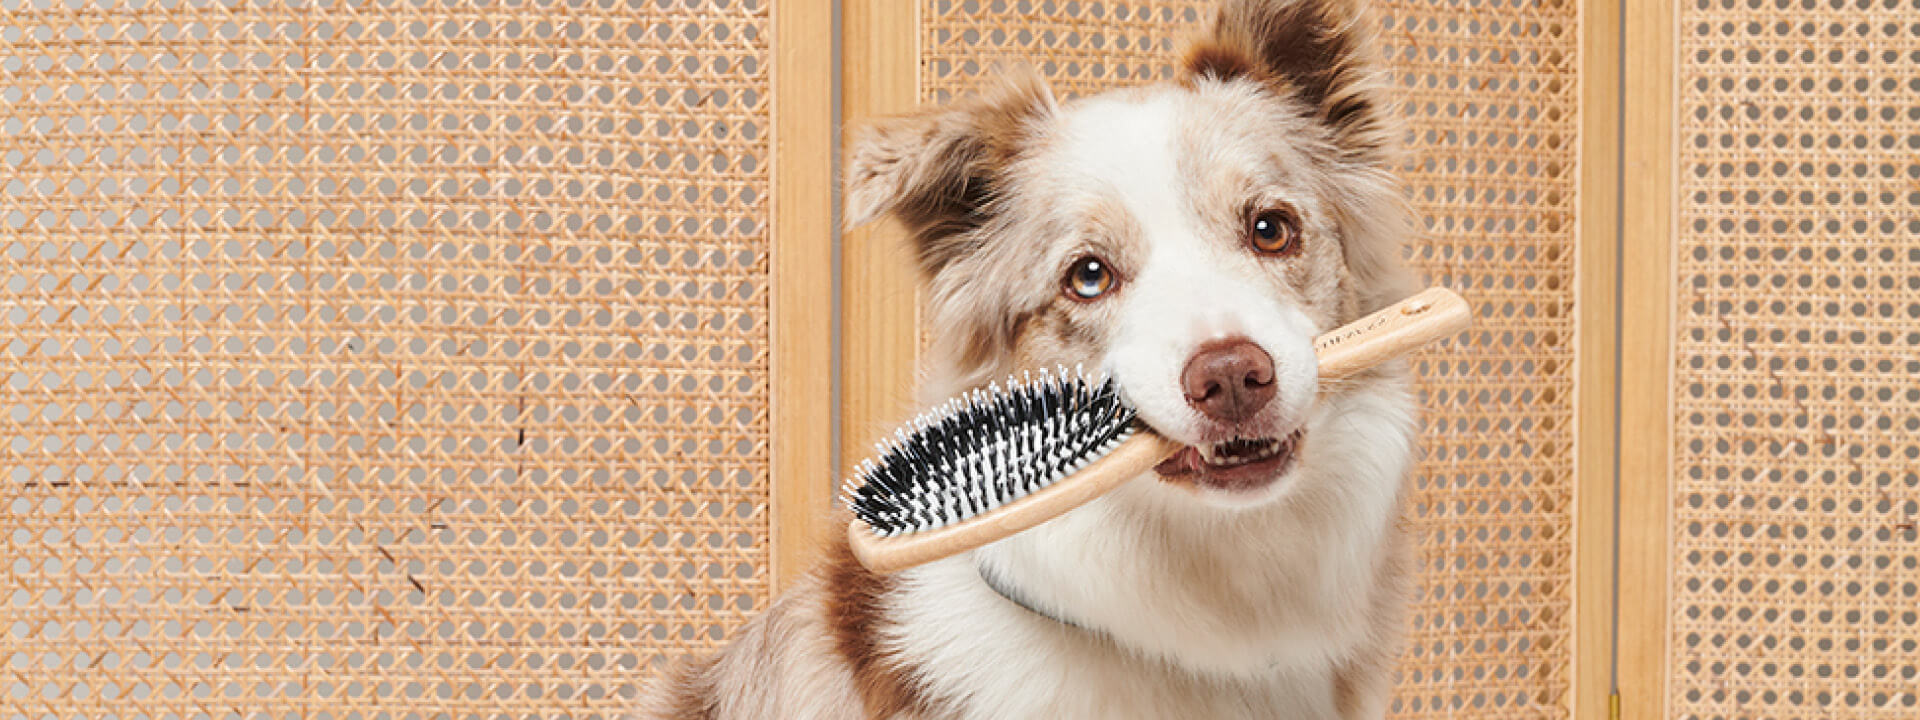 Dog brushes